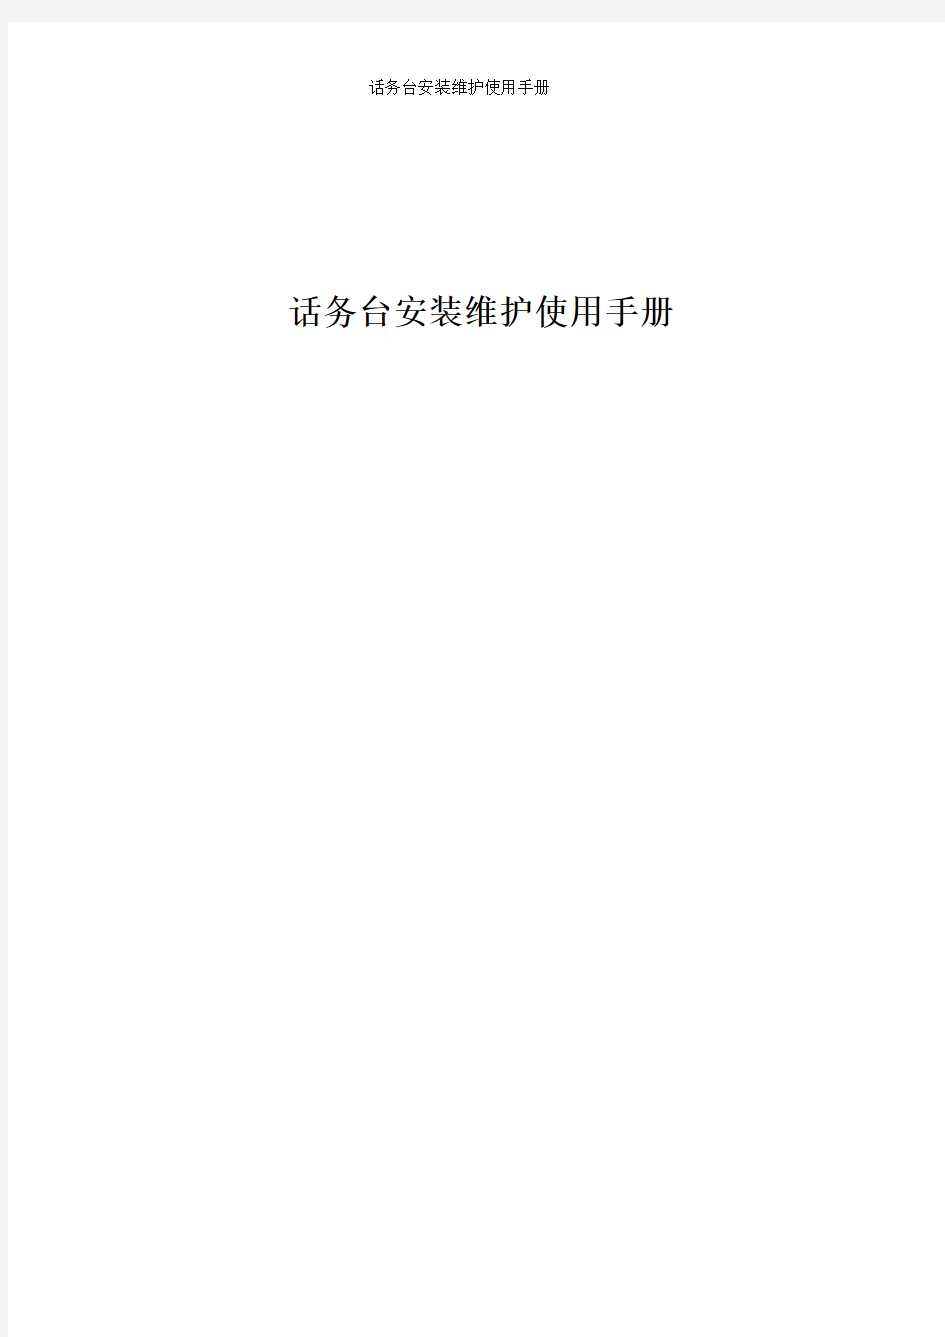 华为、中兴话务台安装维护使用手册(完整版)